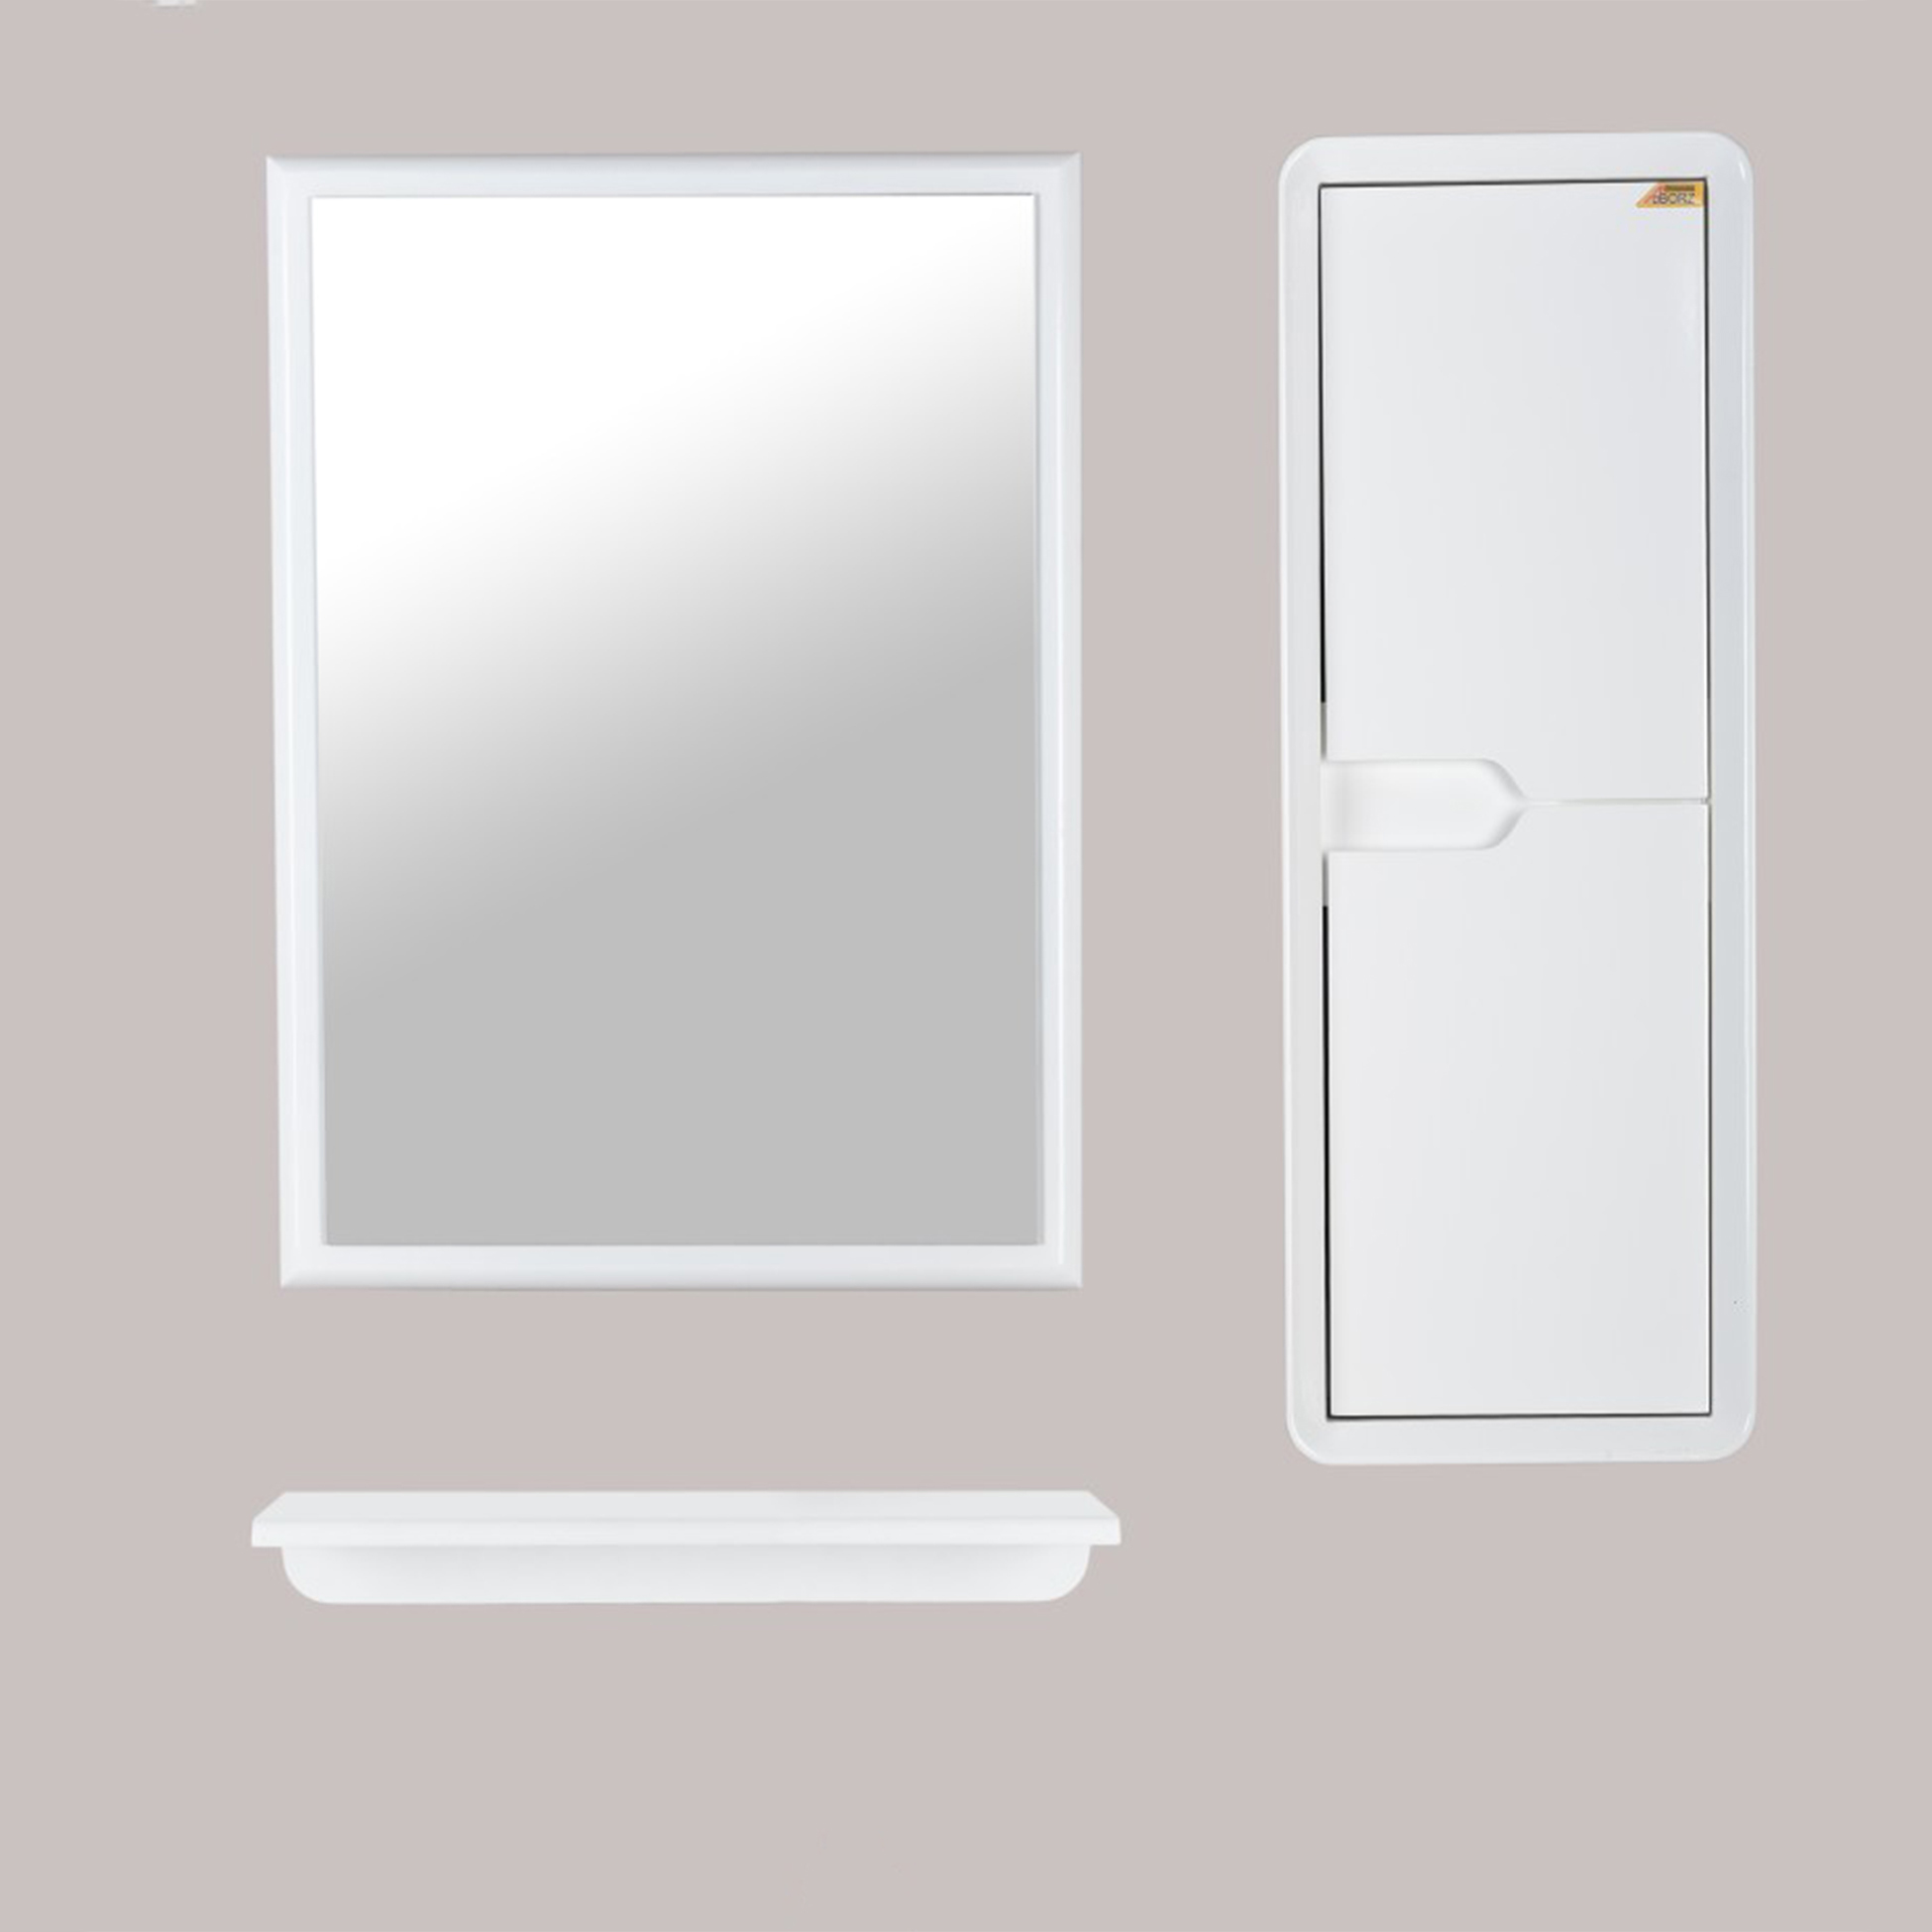 ست آینه و باکس و اتاژور سرویس بهداشتی البرز مدل کویینتو 70